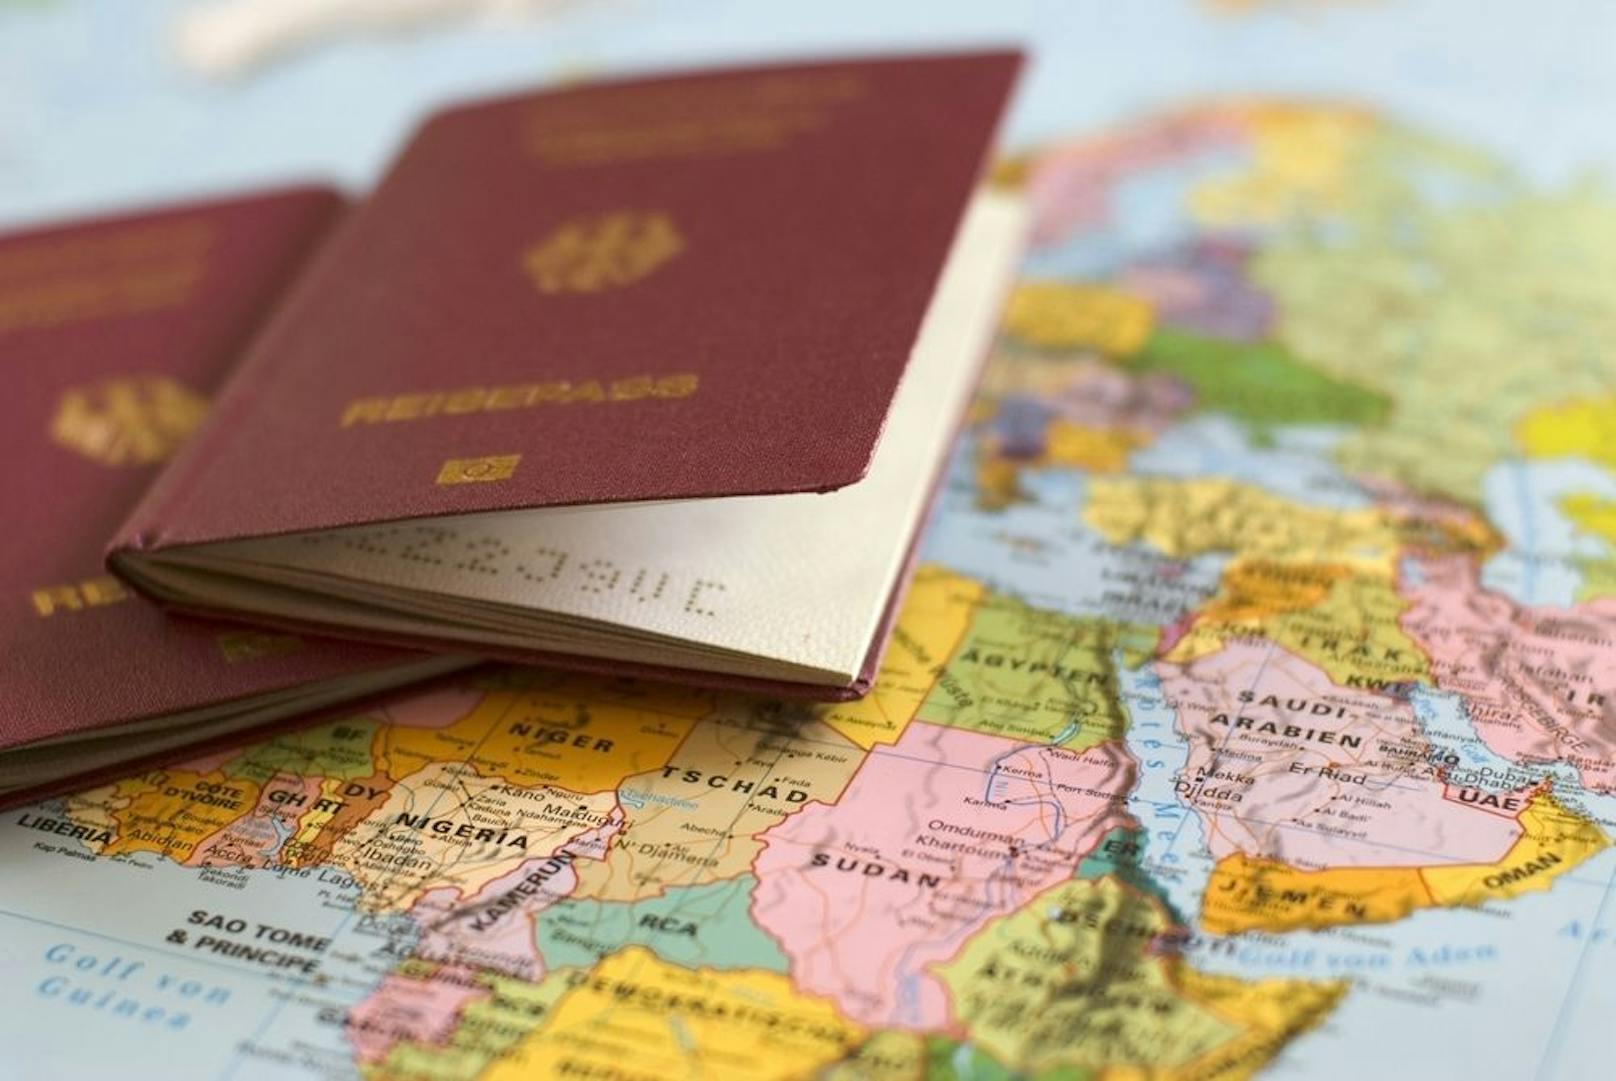 Familie schickt 5 Mal Unterlagen – MA35 lehnt Pass ab